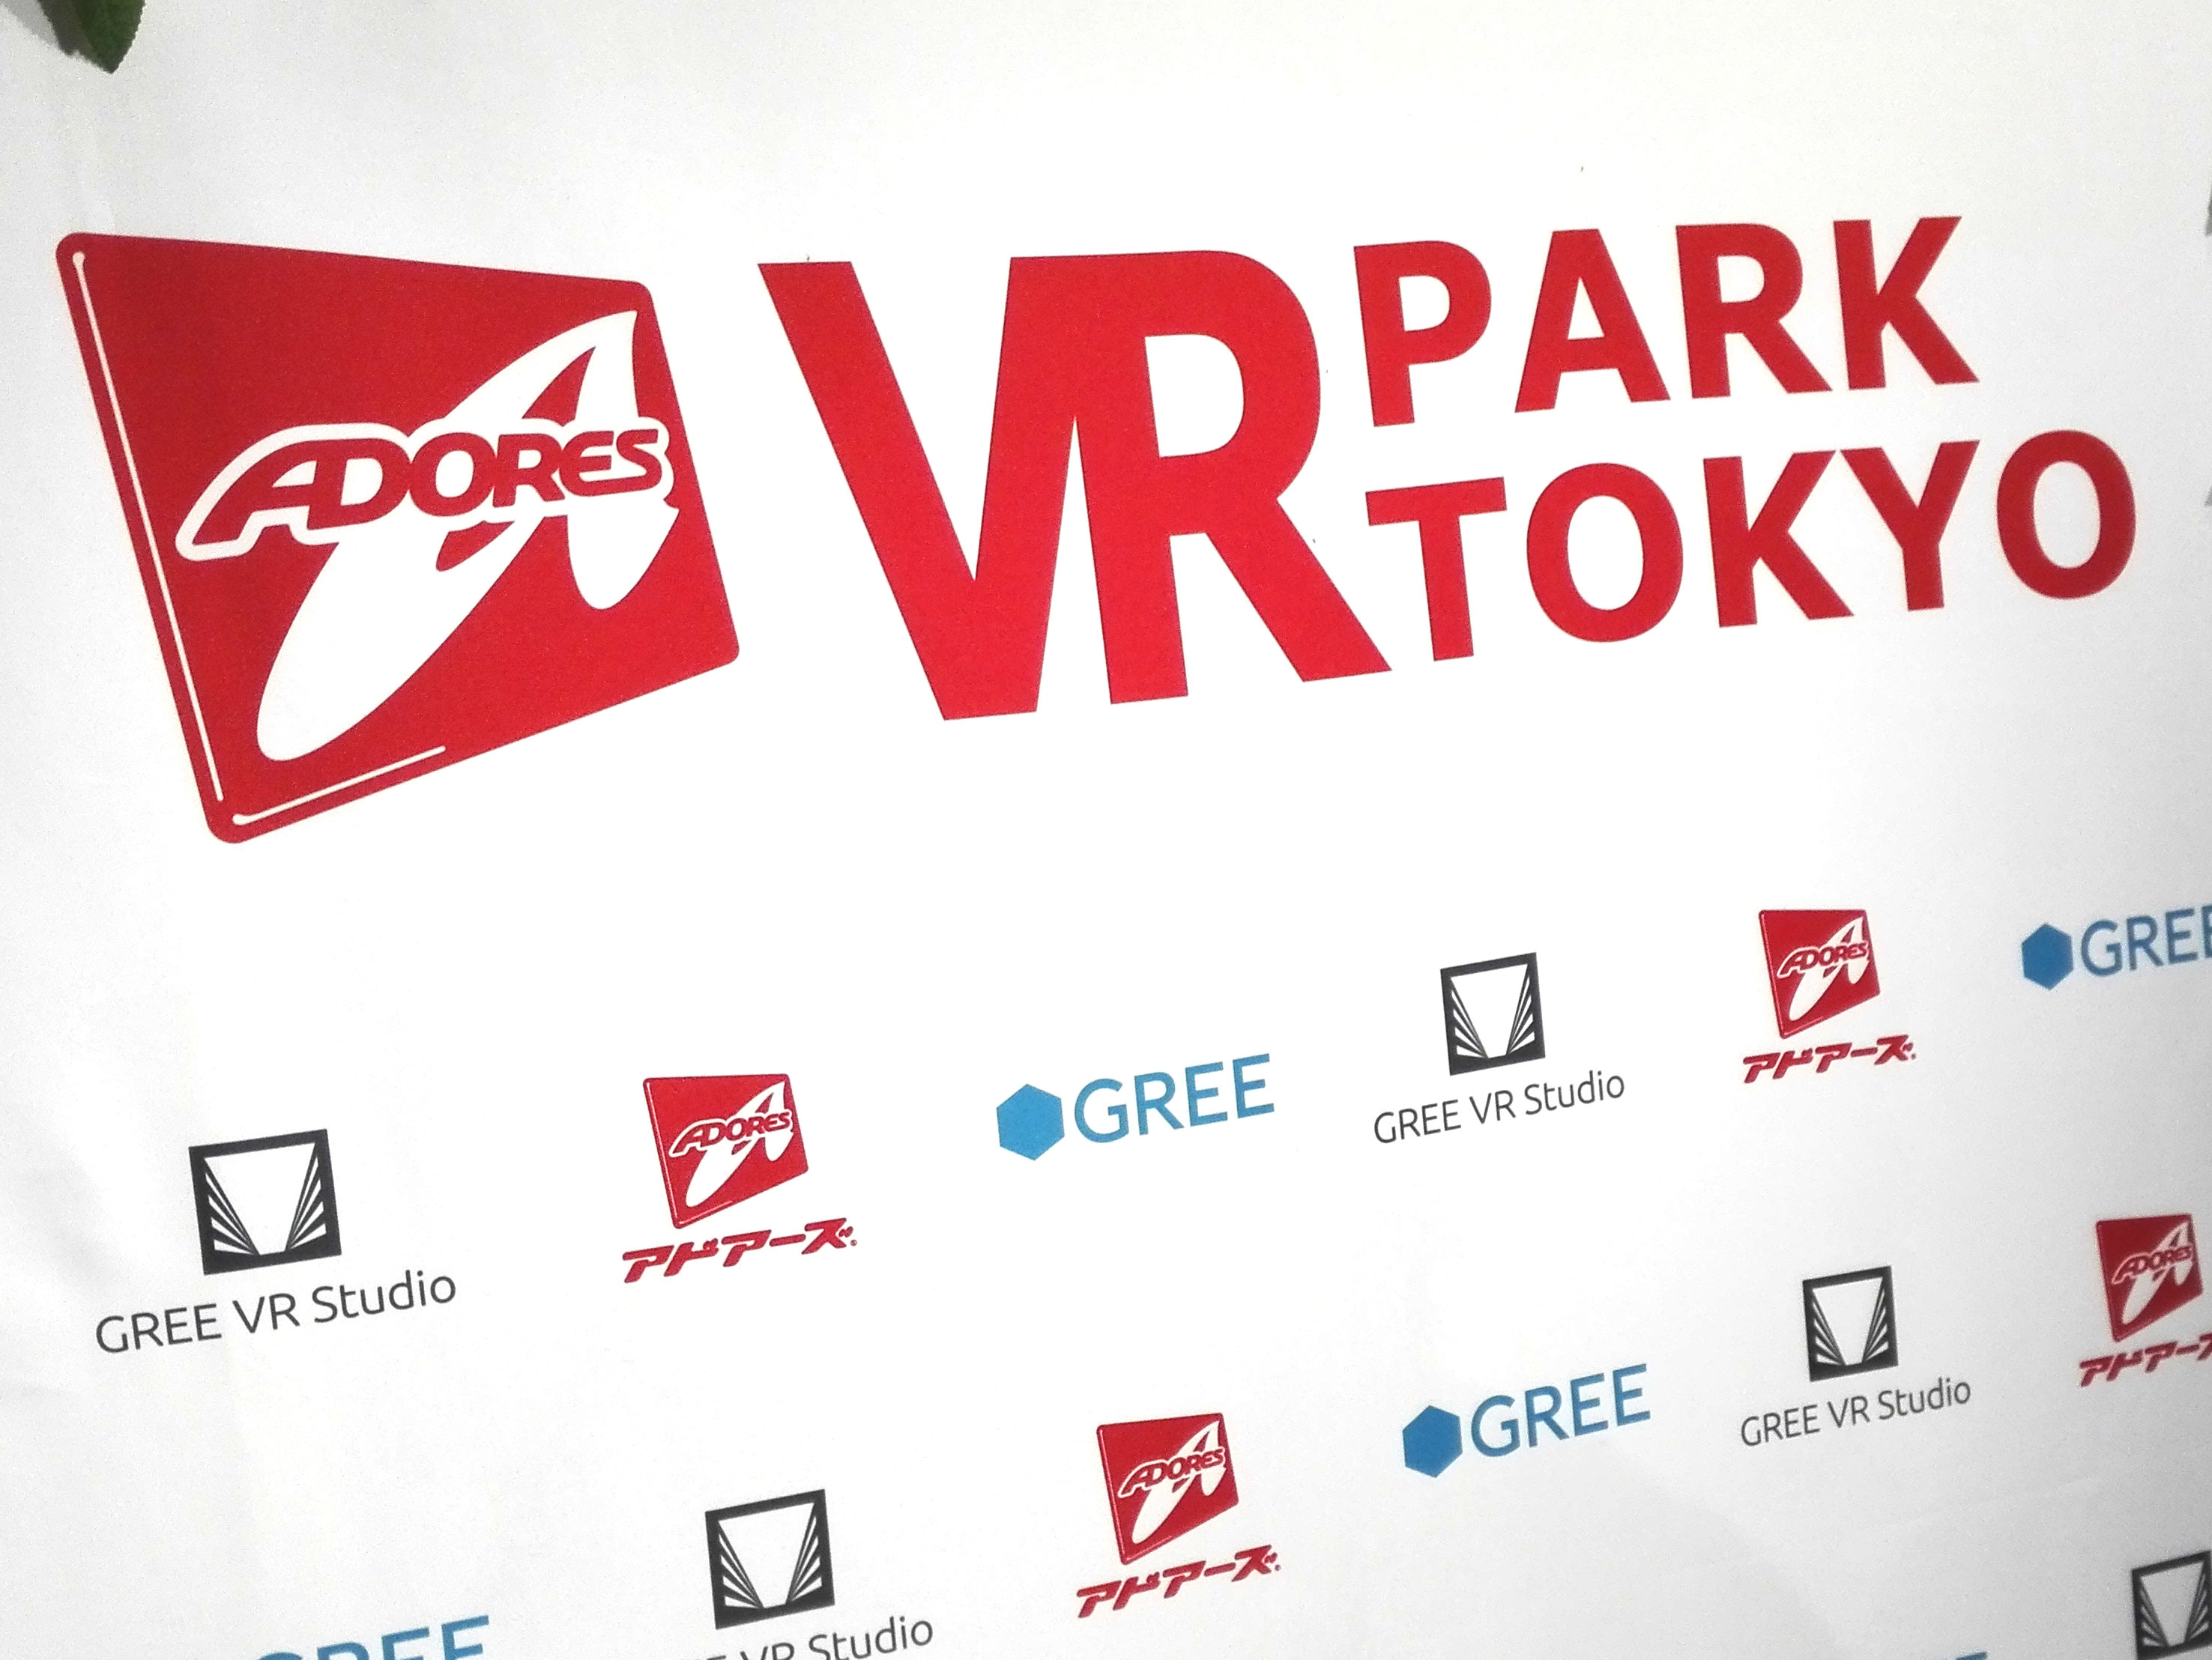 VR PARK TOKYOに行ったら超絶面白かった！